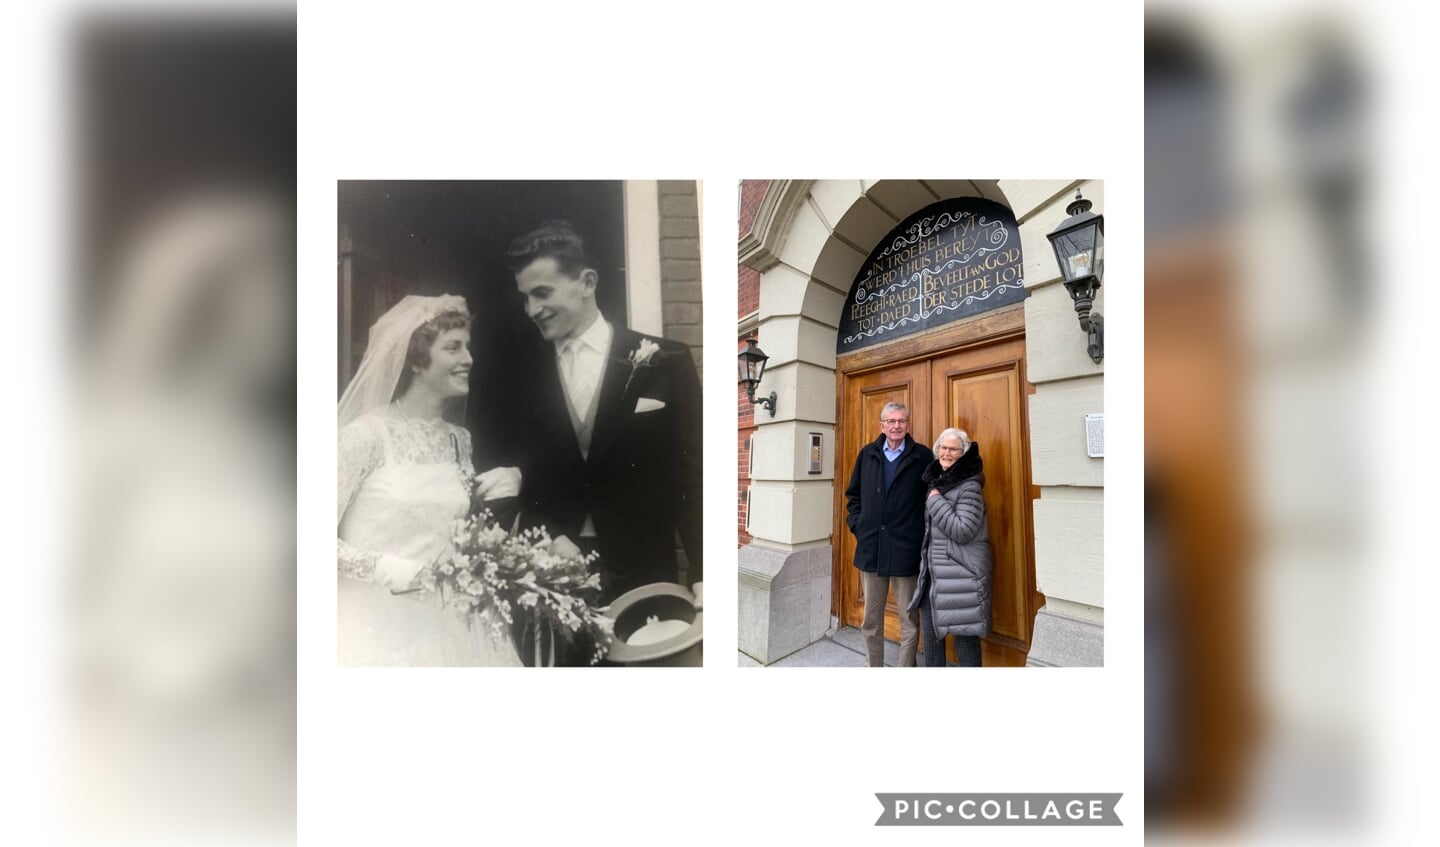 60 jaar geleden getrouwd en 60 jaar later voor dezelfde deur van het gemeentehuis van Muiden